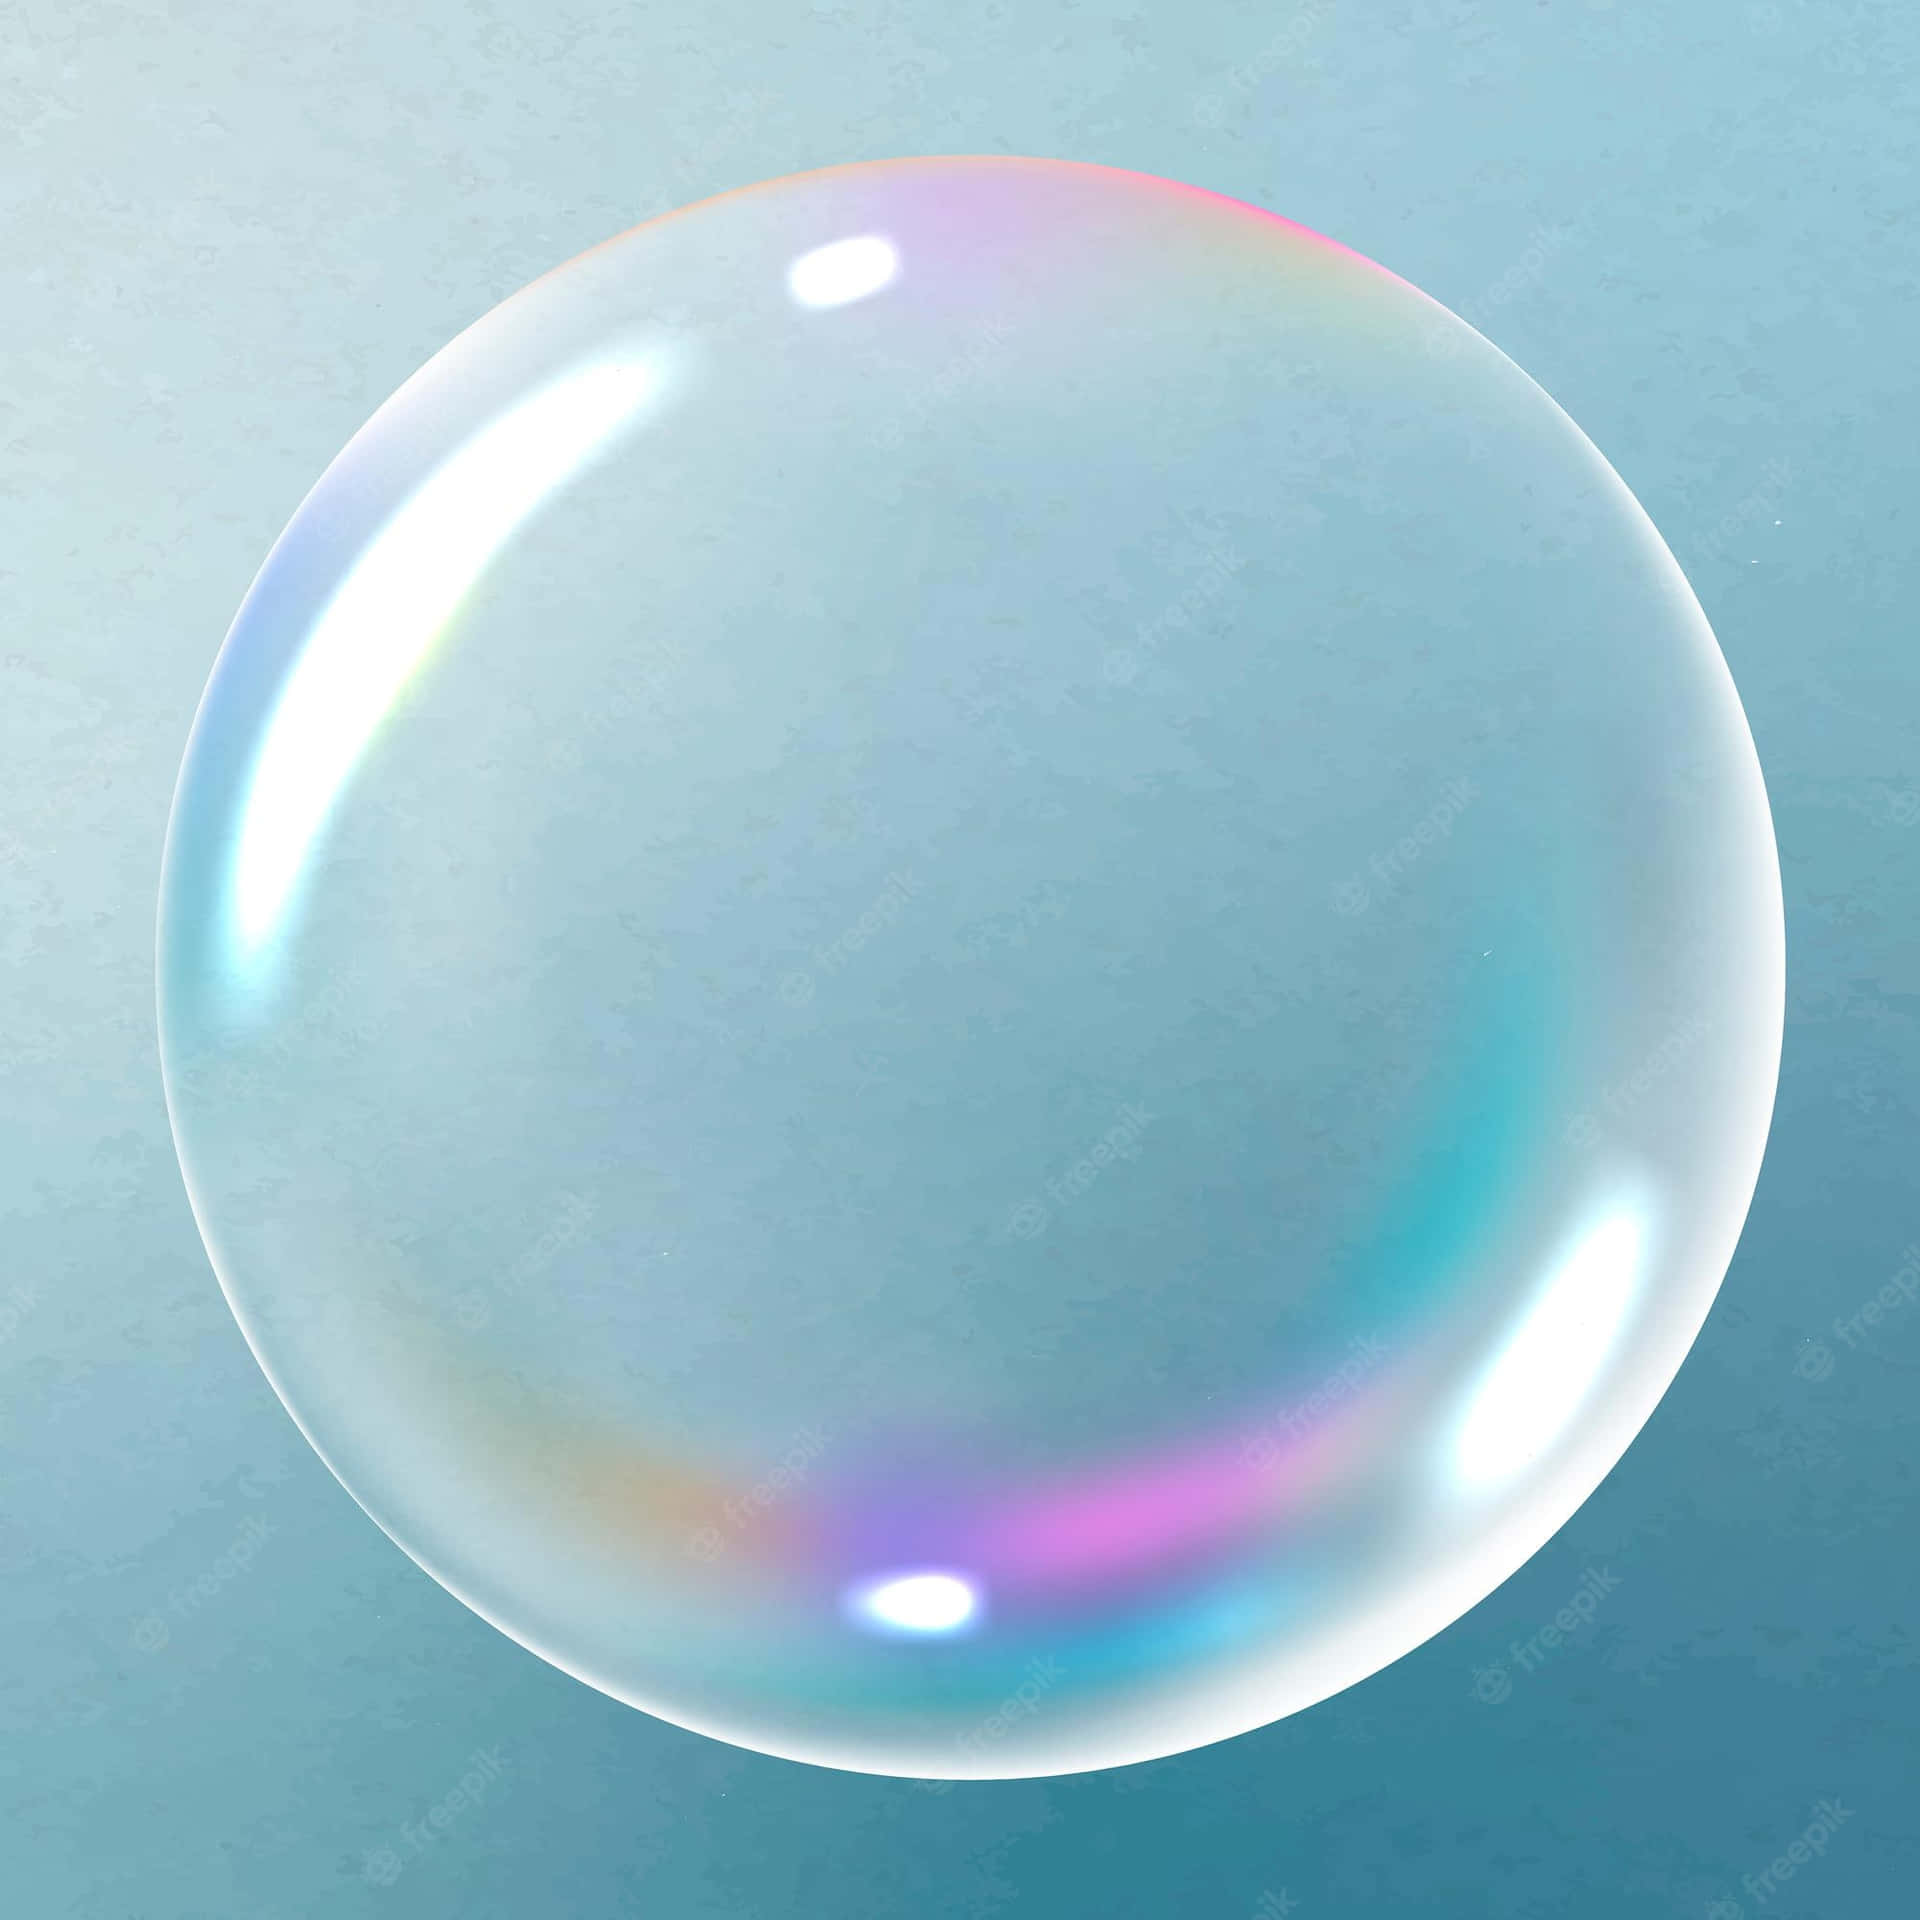 A Transparent Soap Bubble On A Blue Background